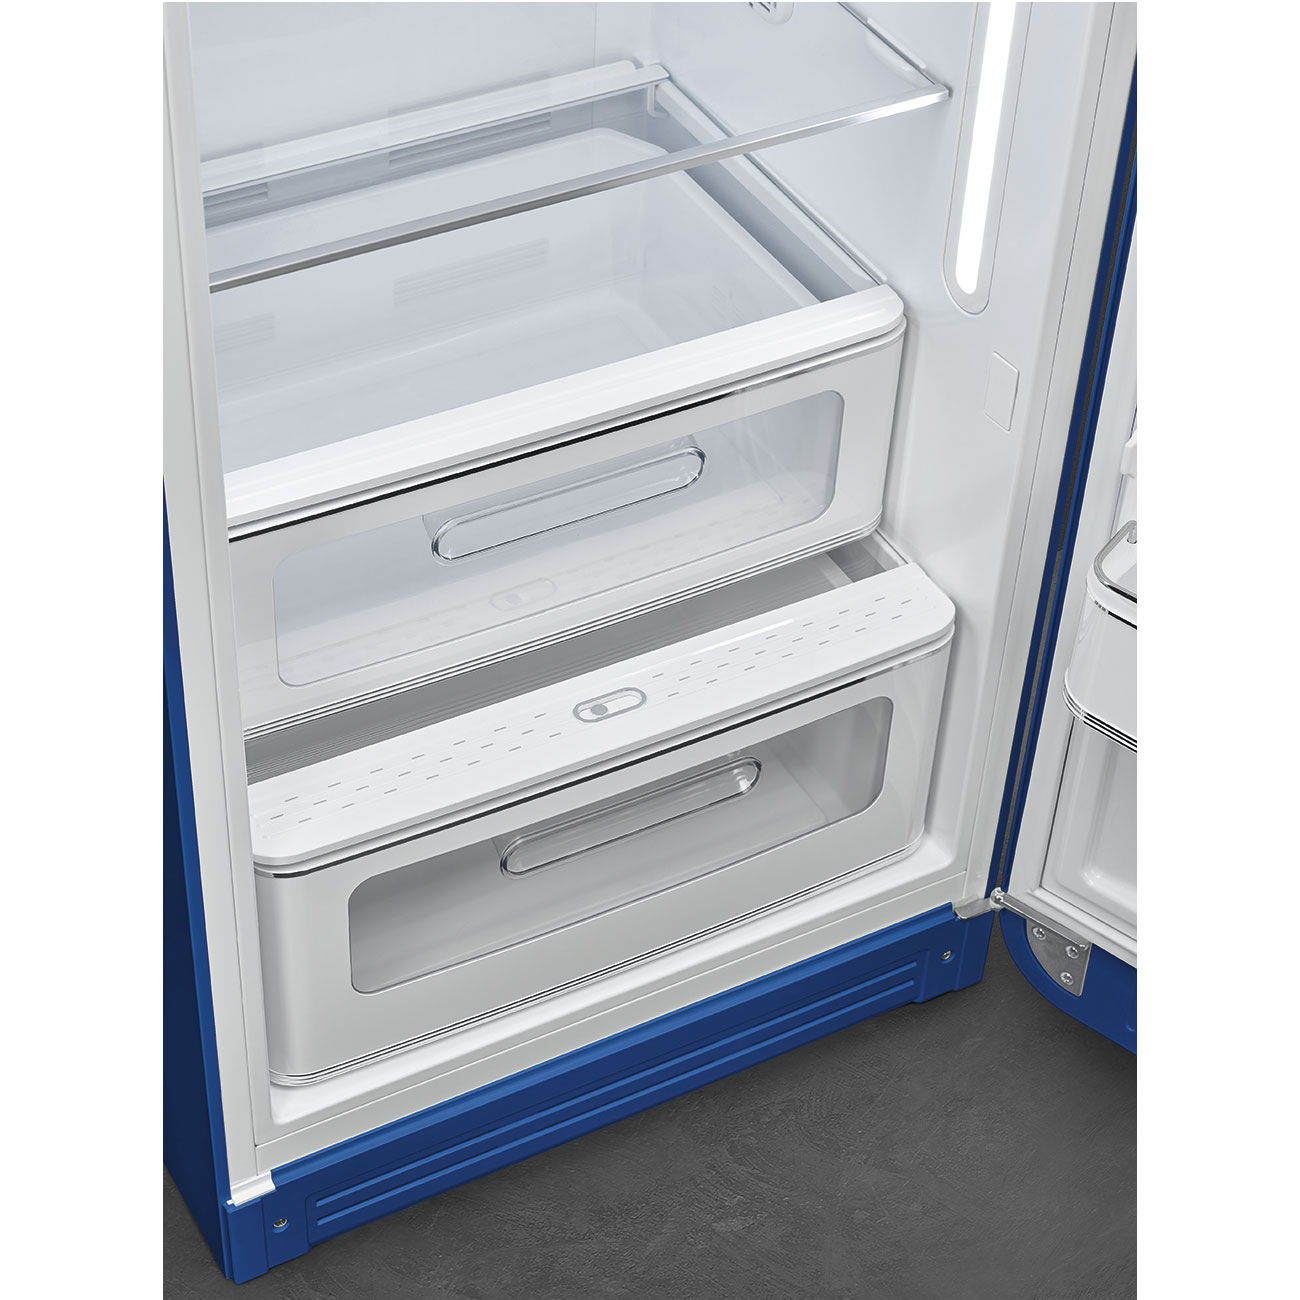 Blue refrigerator - Smeg_7